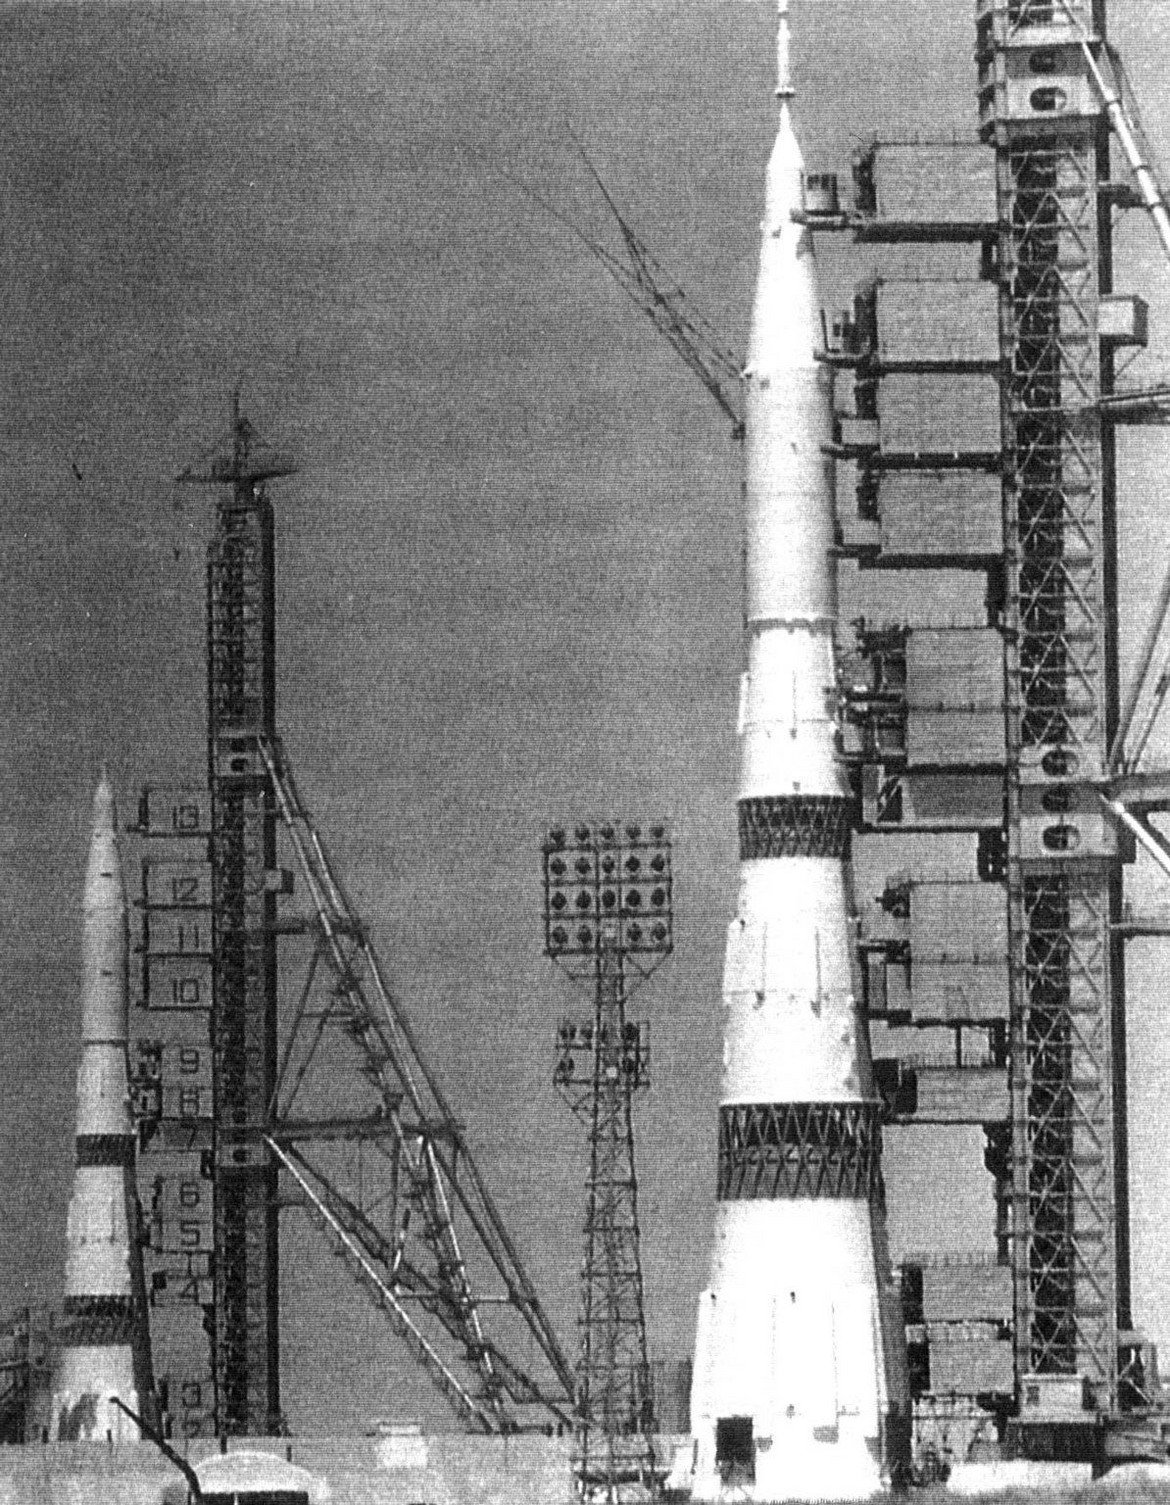 4. Ракетата Н1

Взривове, които да са толкова мощни, колкото една от най-големите не-ядрени експлозии в историята, не са най-добрият начин да представиш нова ракета. В опит да се доберат първи до Луната, СССР проектират и изграждат ракетата Н1 (от Ракета-носител). Тя разчита на 30 по-малки двигатели, които трябва да издигнат 105 метровото, 2750-тонно тяло.

Оказва се, че това не е най-добрият вариант. По време на втория от общо 4-те неуспешни опита за изстрелване двигателите се взривяват така силно, че дори сателити успяват да заснемат последствията. Неуспехите довеждат до края на програмата Н1 през 1974.